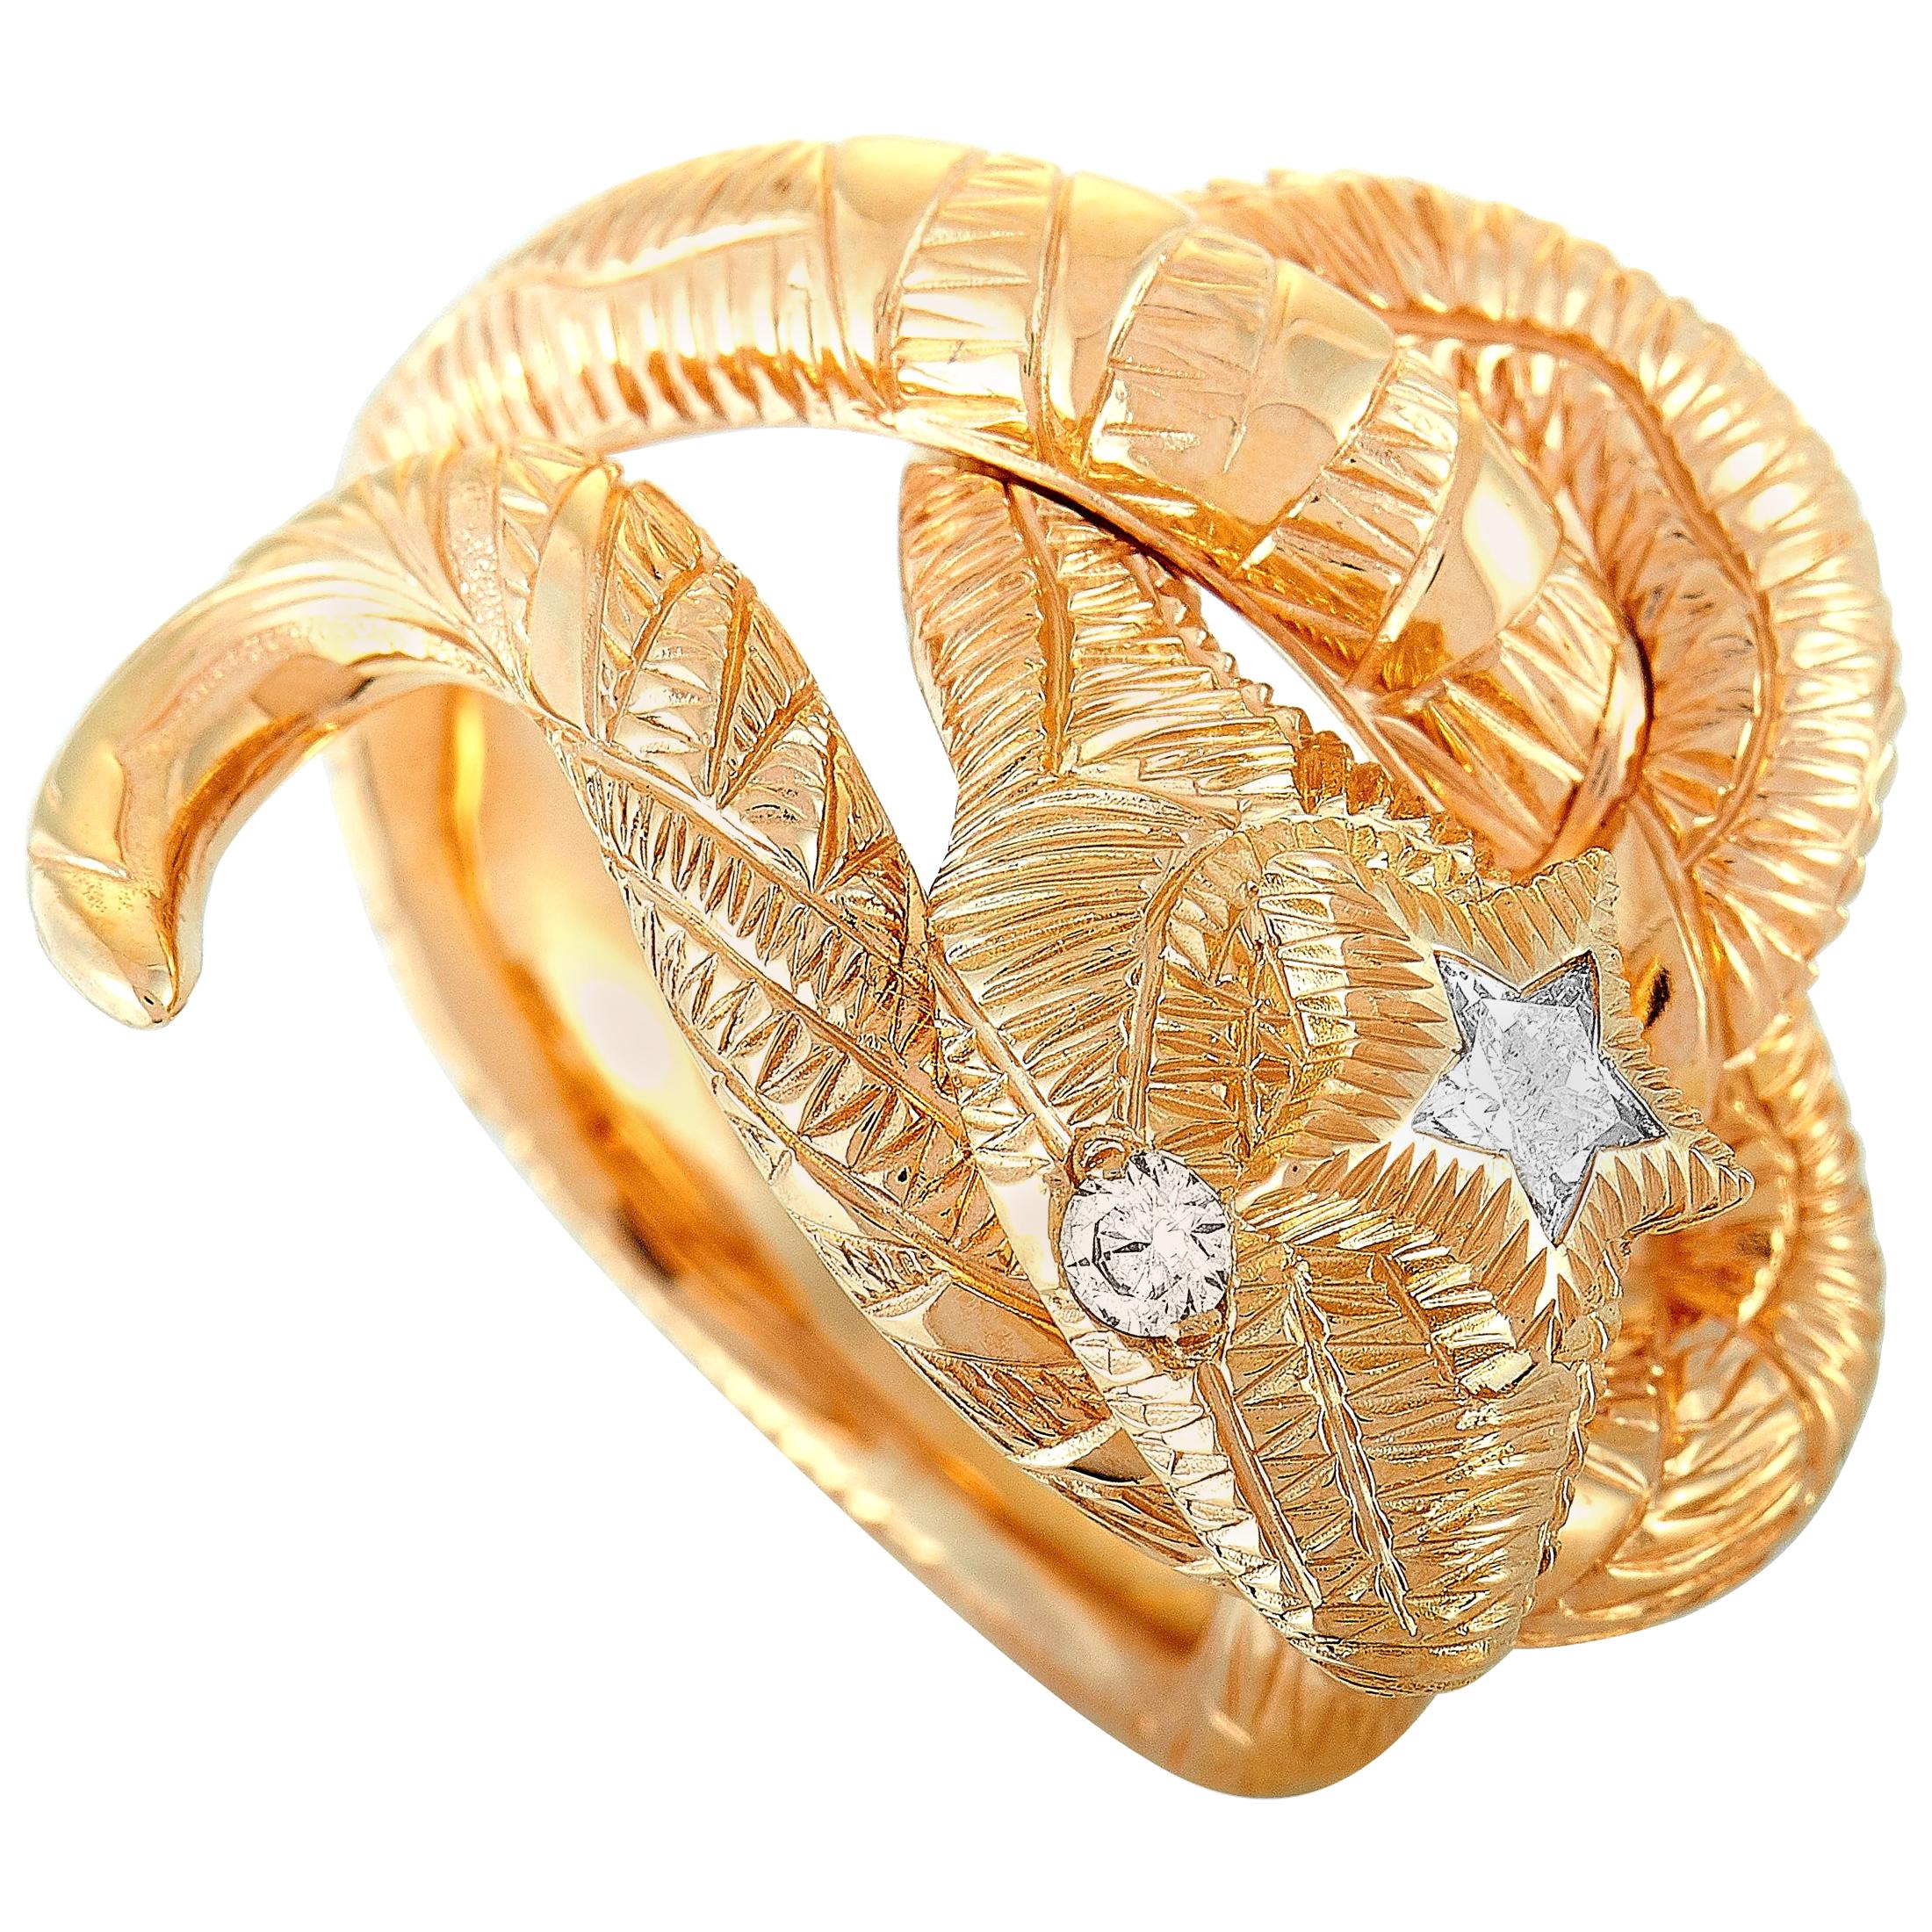 Gucci Le Marché Des Merveilles 18 Karat Rose Gold Diamond Snake Ring